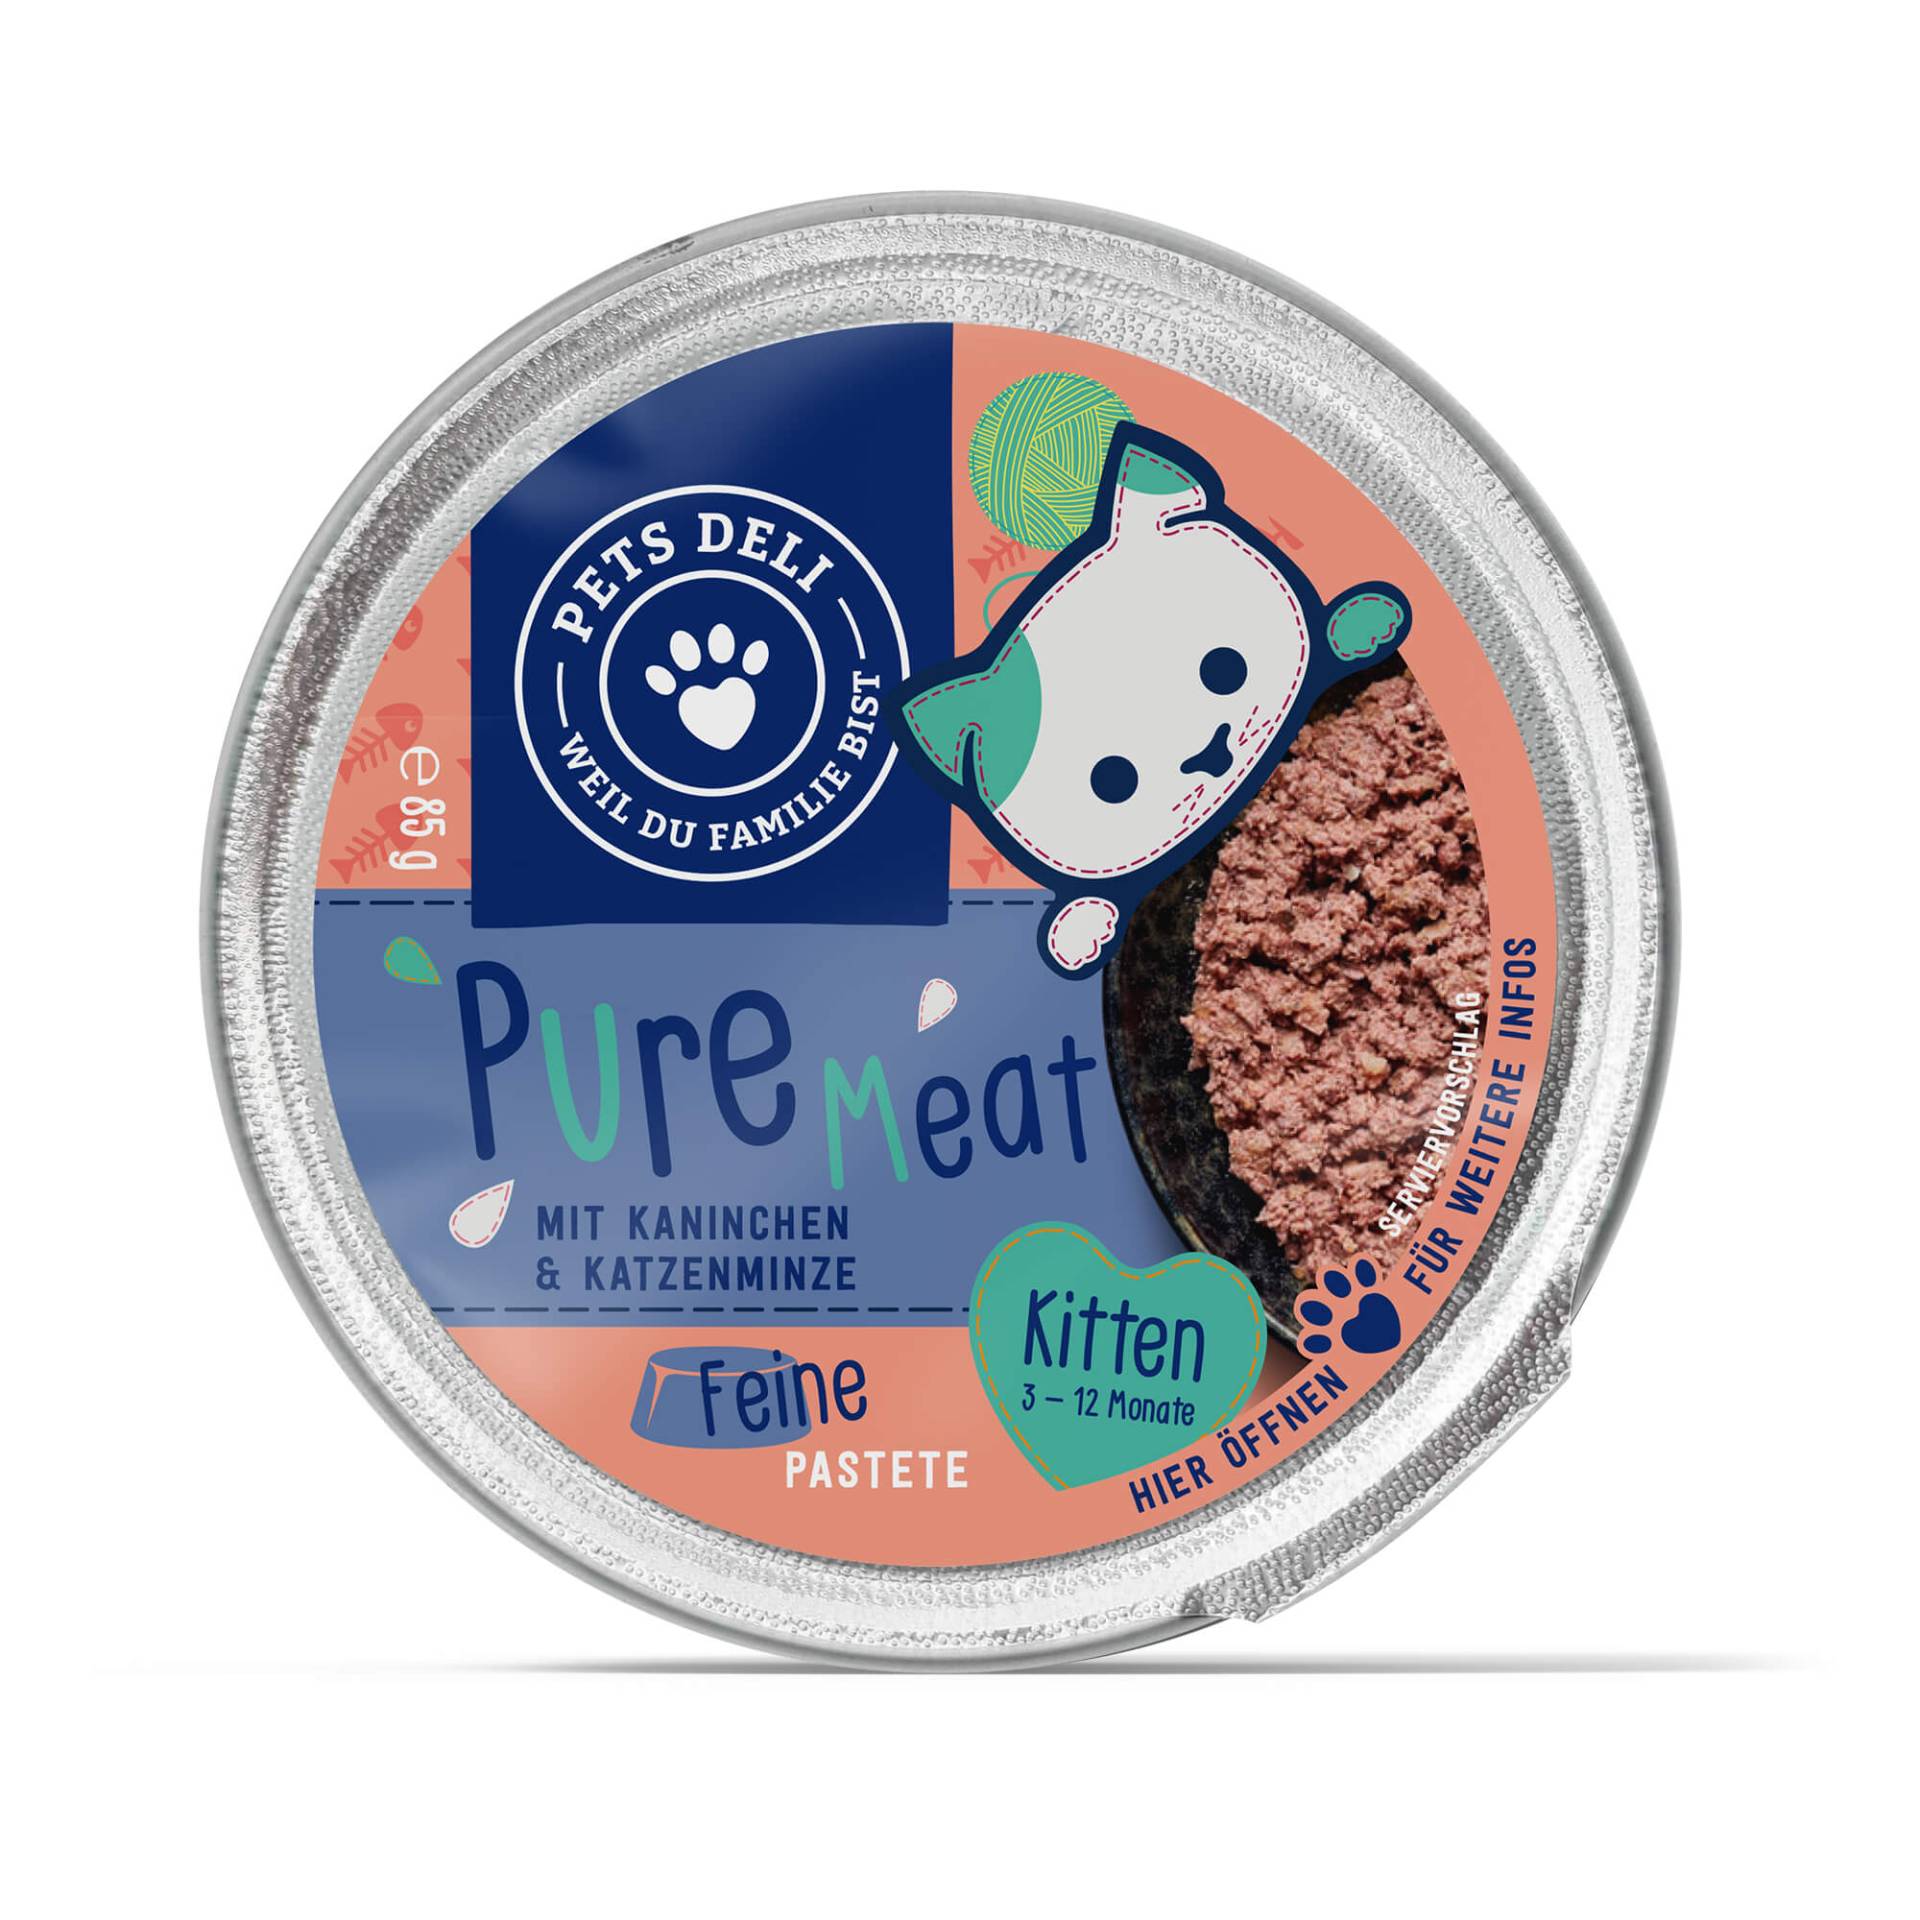 Kitten Nassfutter "Pure Meat" mit Kaninchen und Katzenminze - 85g / Einzeldose von Pets Deli